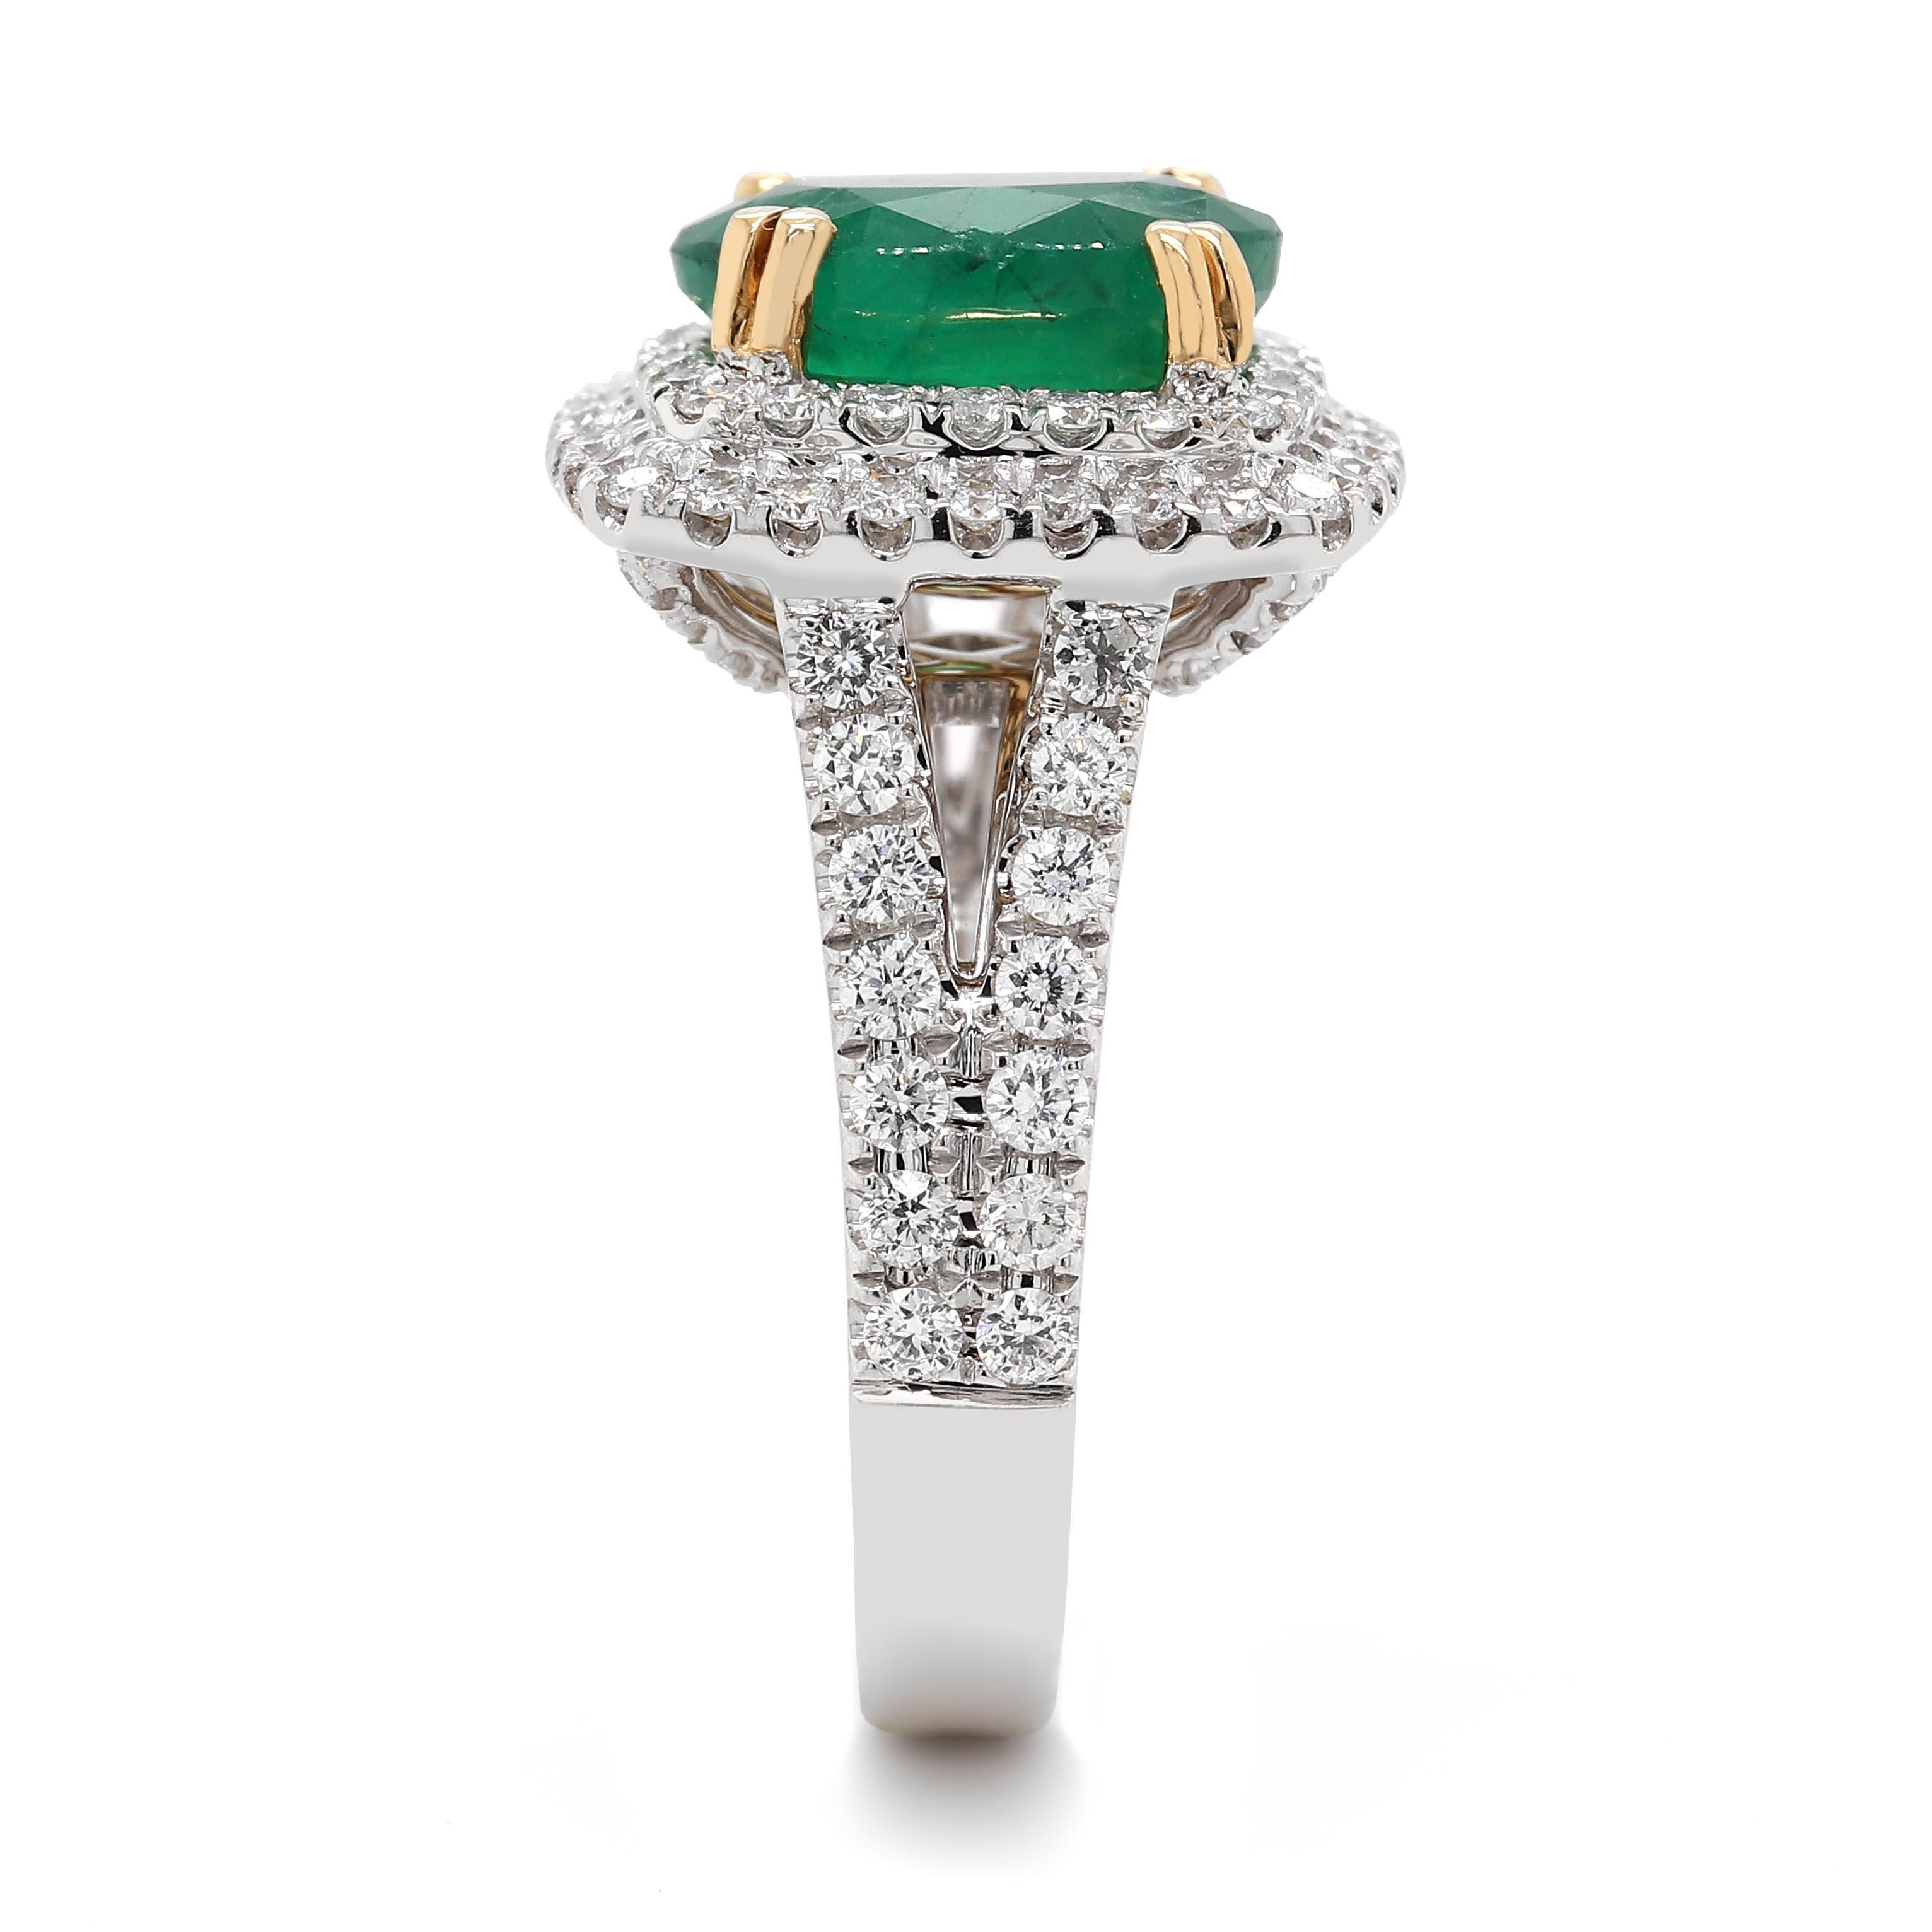 Ring mit einem feinen ovalen Smaragd von etwa 3,03 Karat mit den Maßen 8,23×8,41×6,01 mm. Der Smaragd ist umgeben von 96 runden Diamanten im Brillantschliff von ca. 1,06 Karat mit einer Reinheit von VS und Farbe G. Alle Steine sind in 18k 2 Ton